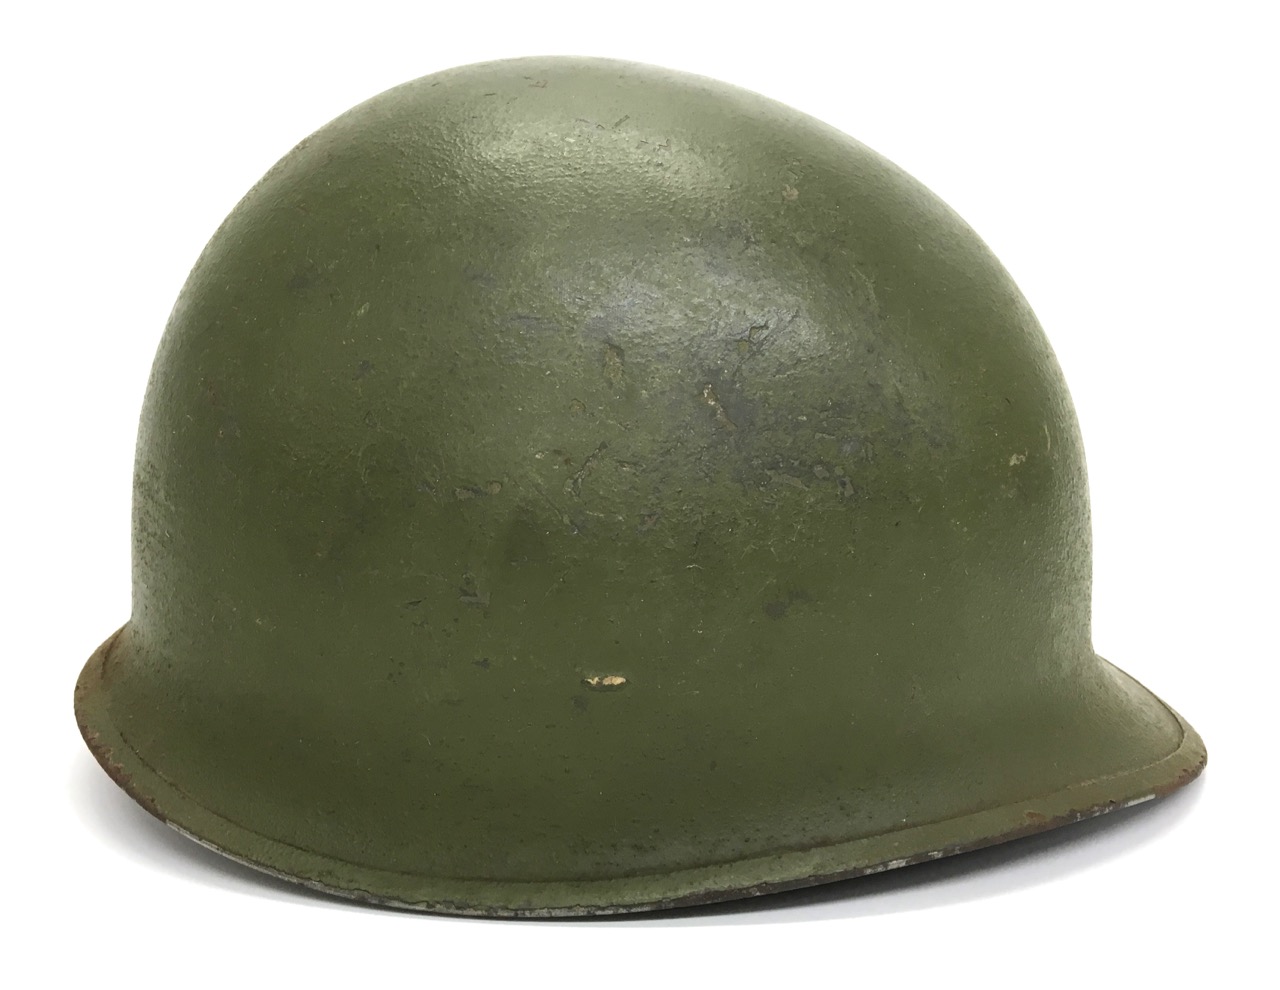 M1 Helmet Советский шлем?